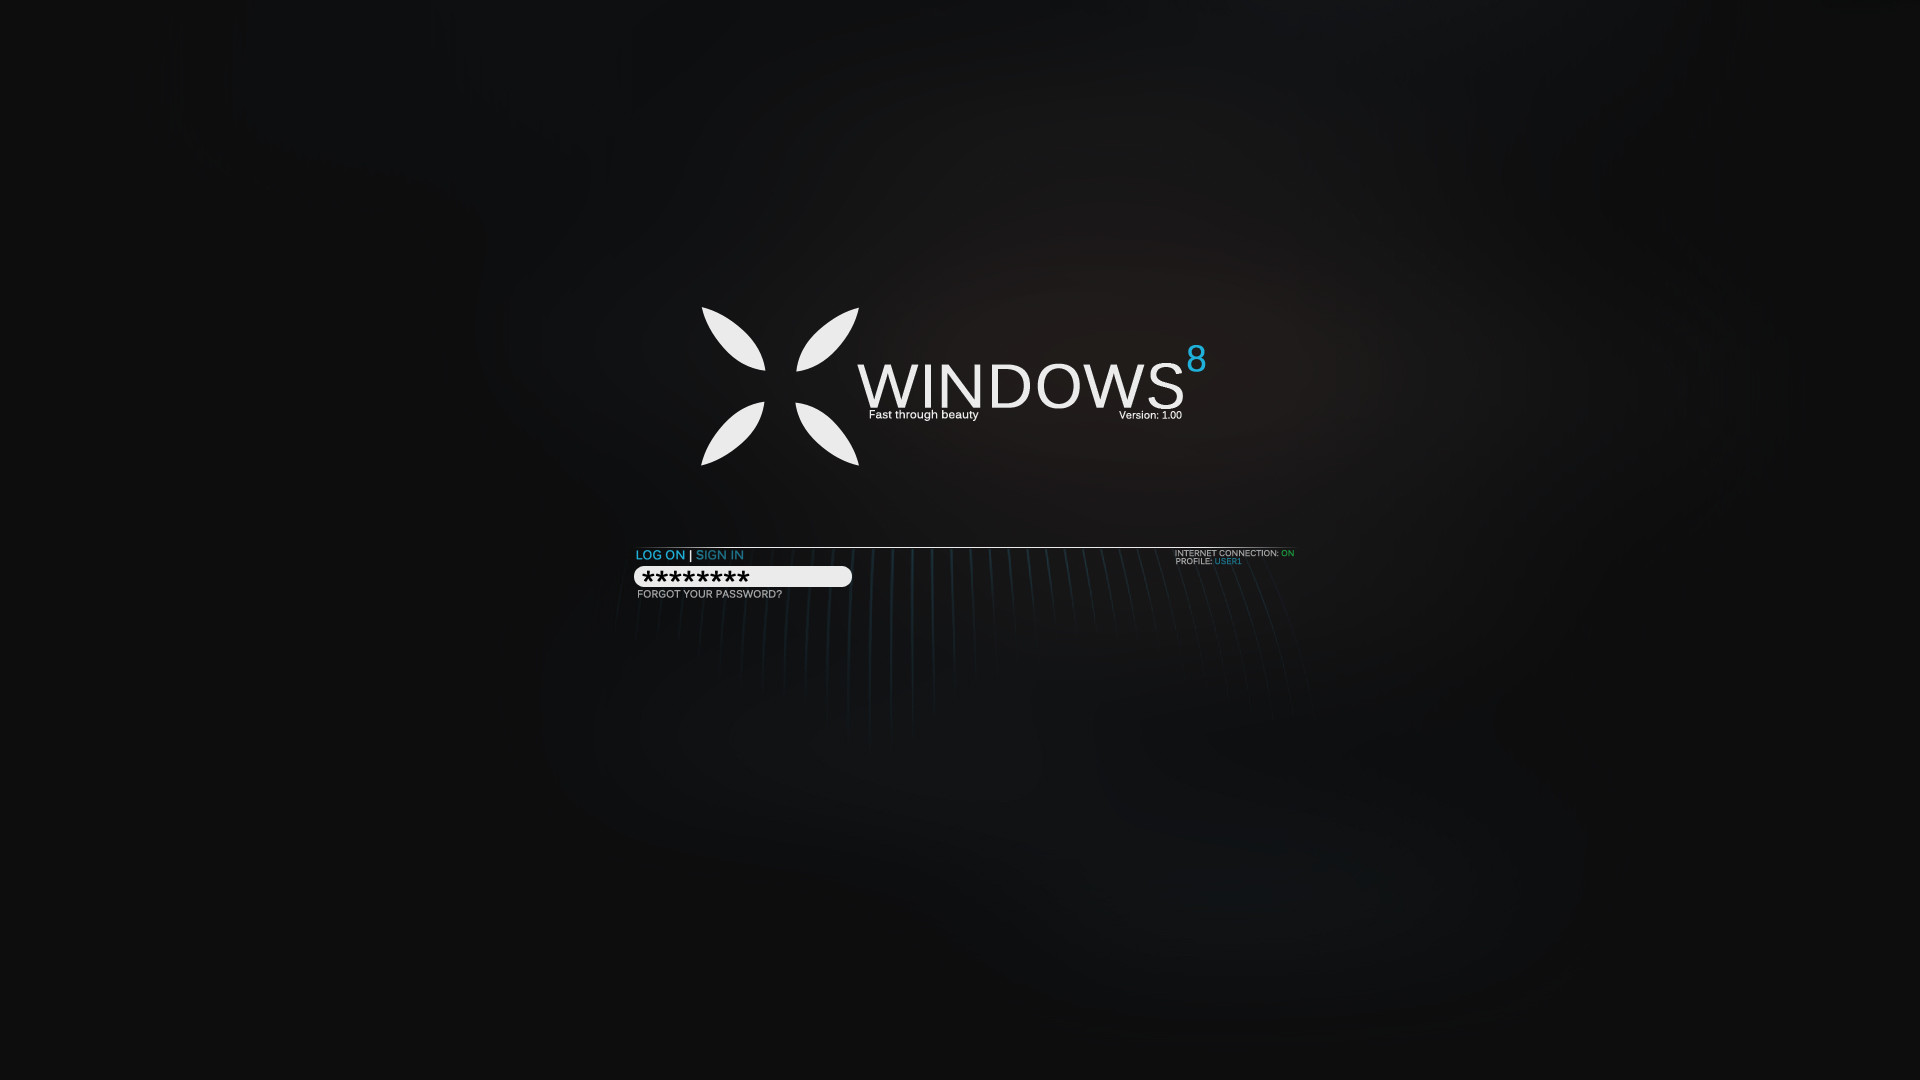 1920x1080 Technology - Windows 8 Windows Wallpaper